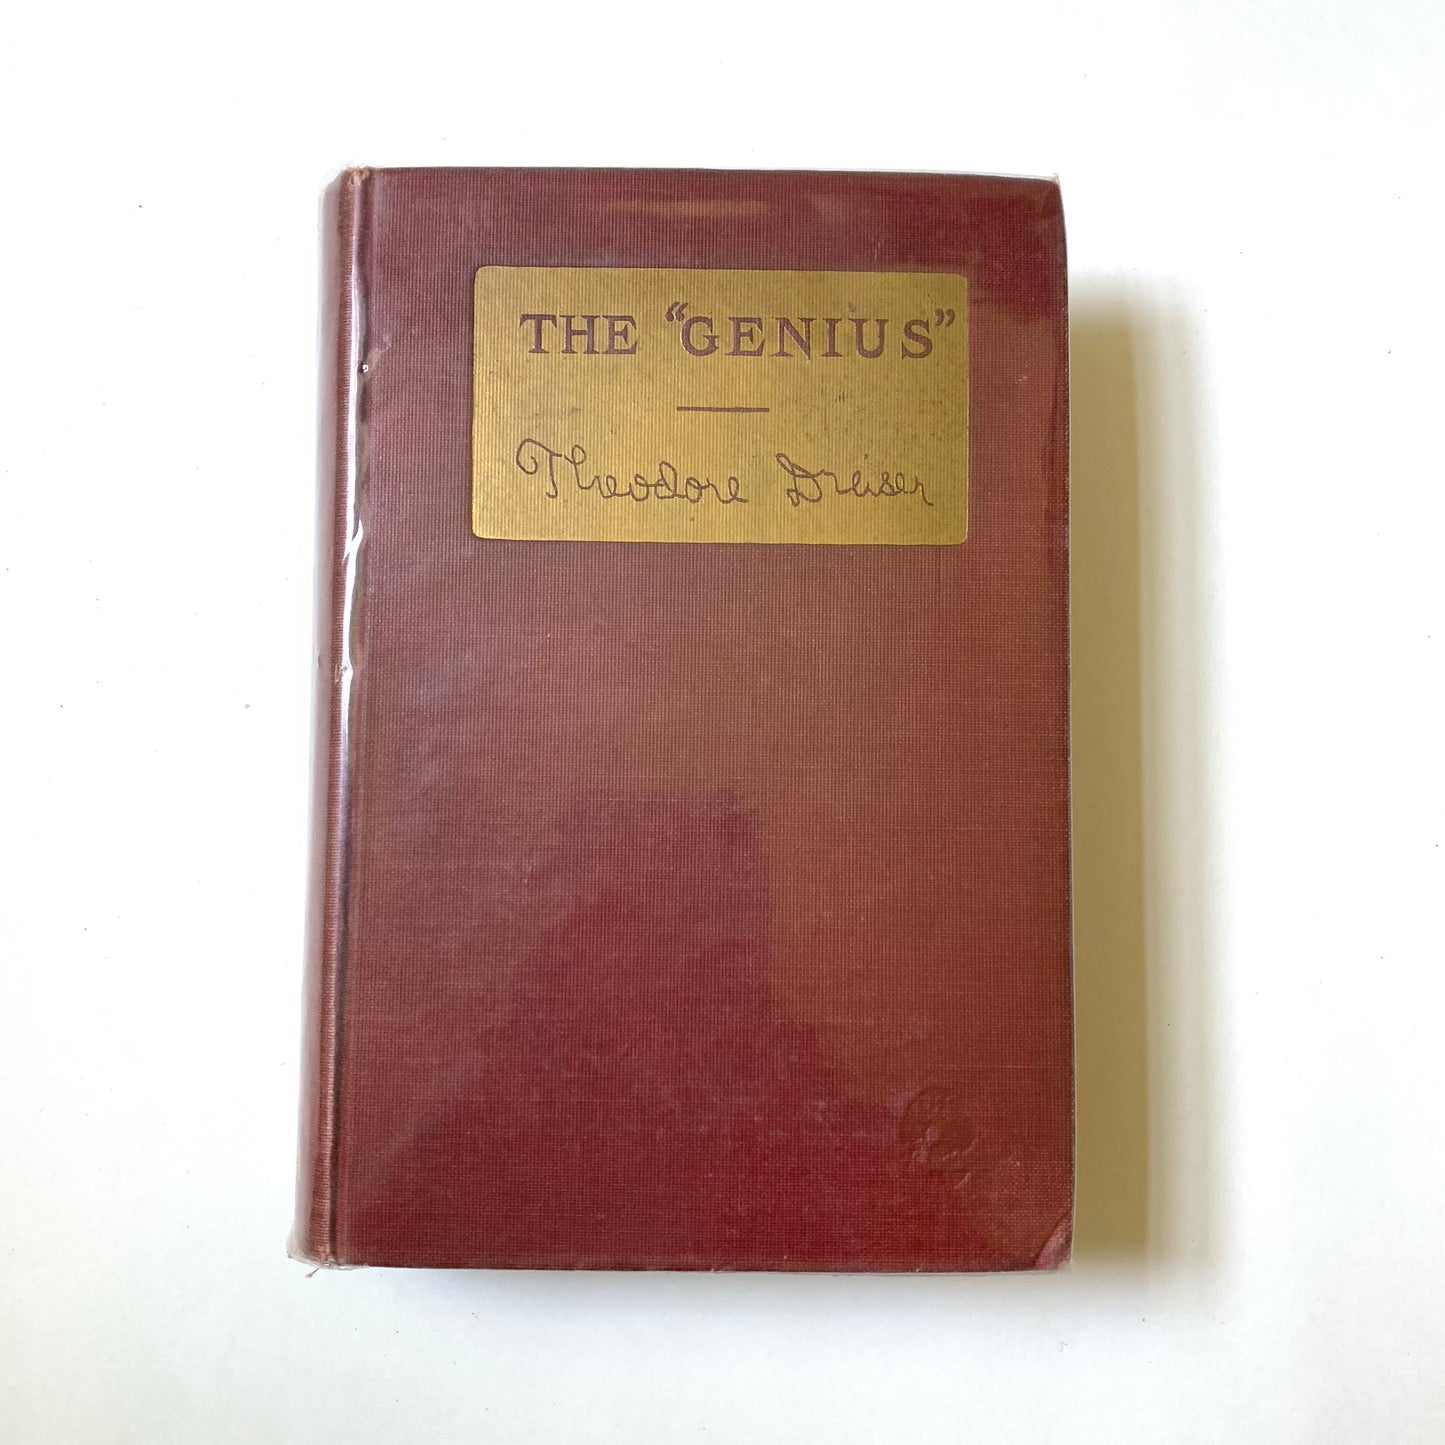 Vintage Book- The "Genius" by Theodore Dreiser